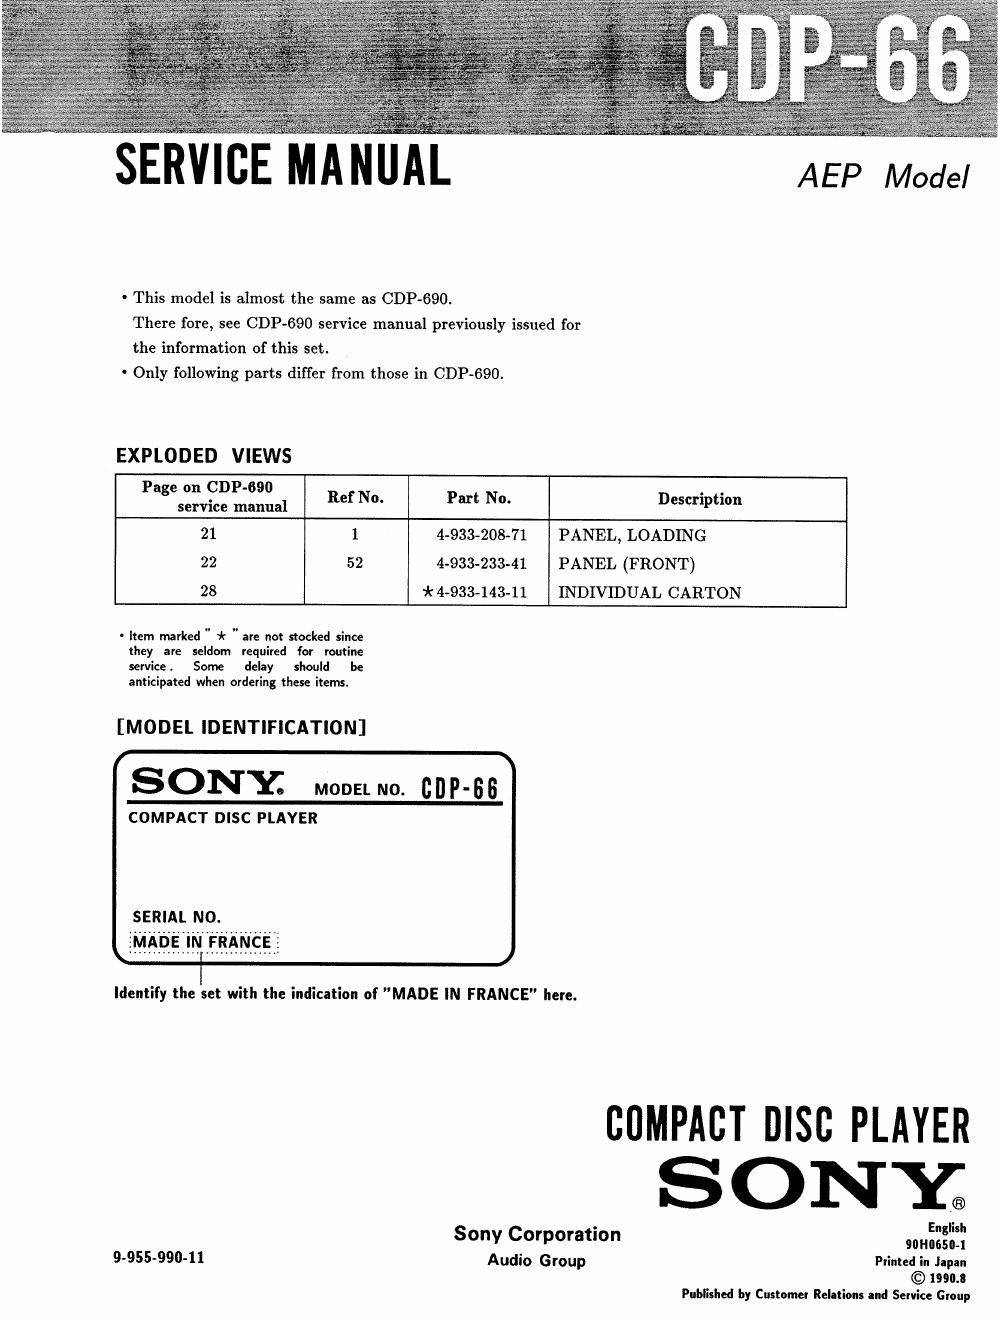 sony cdp 66 service manual